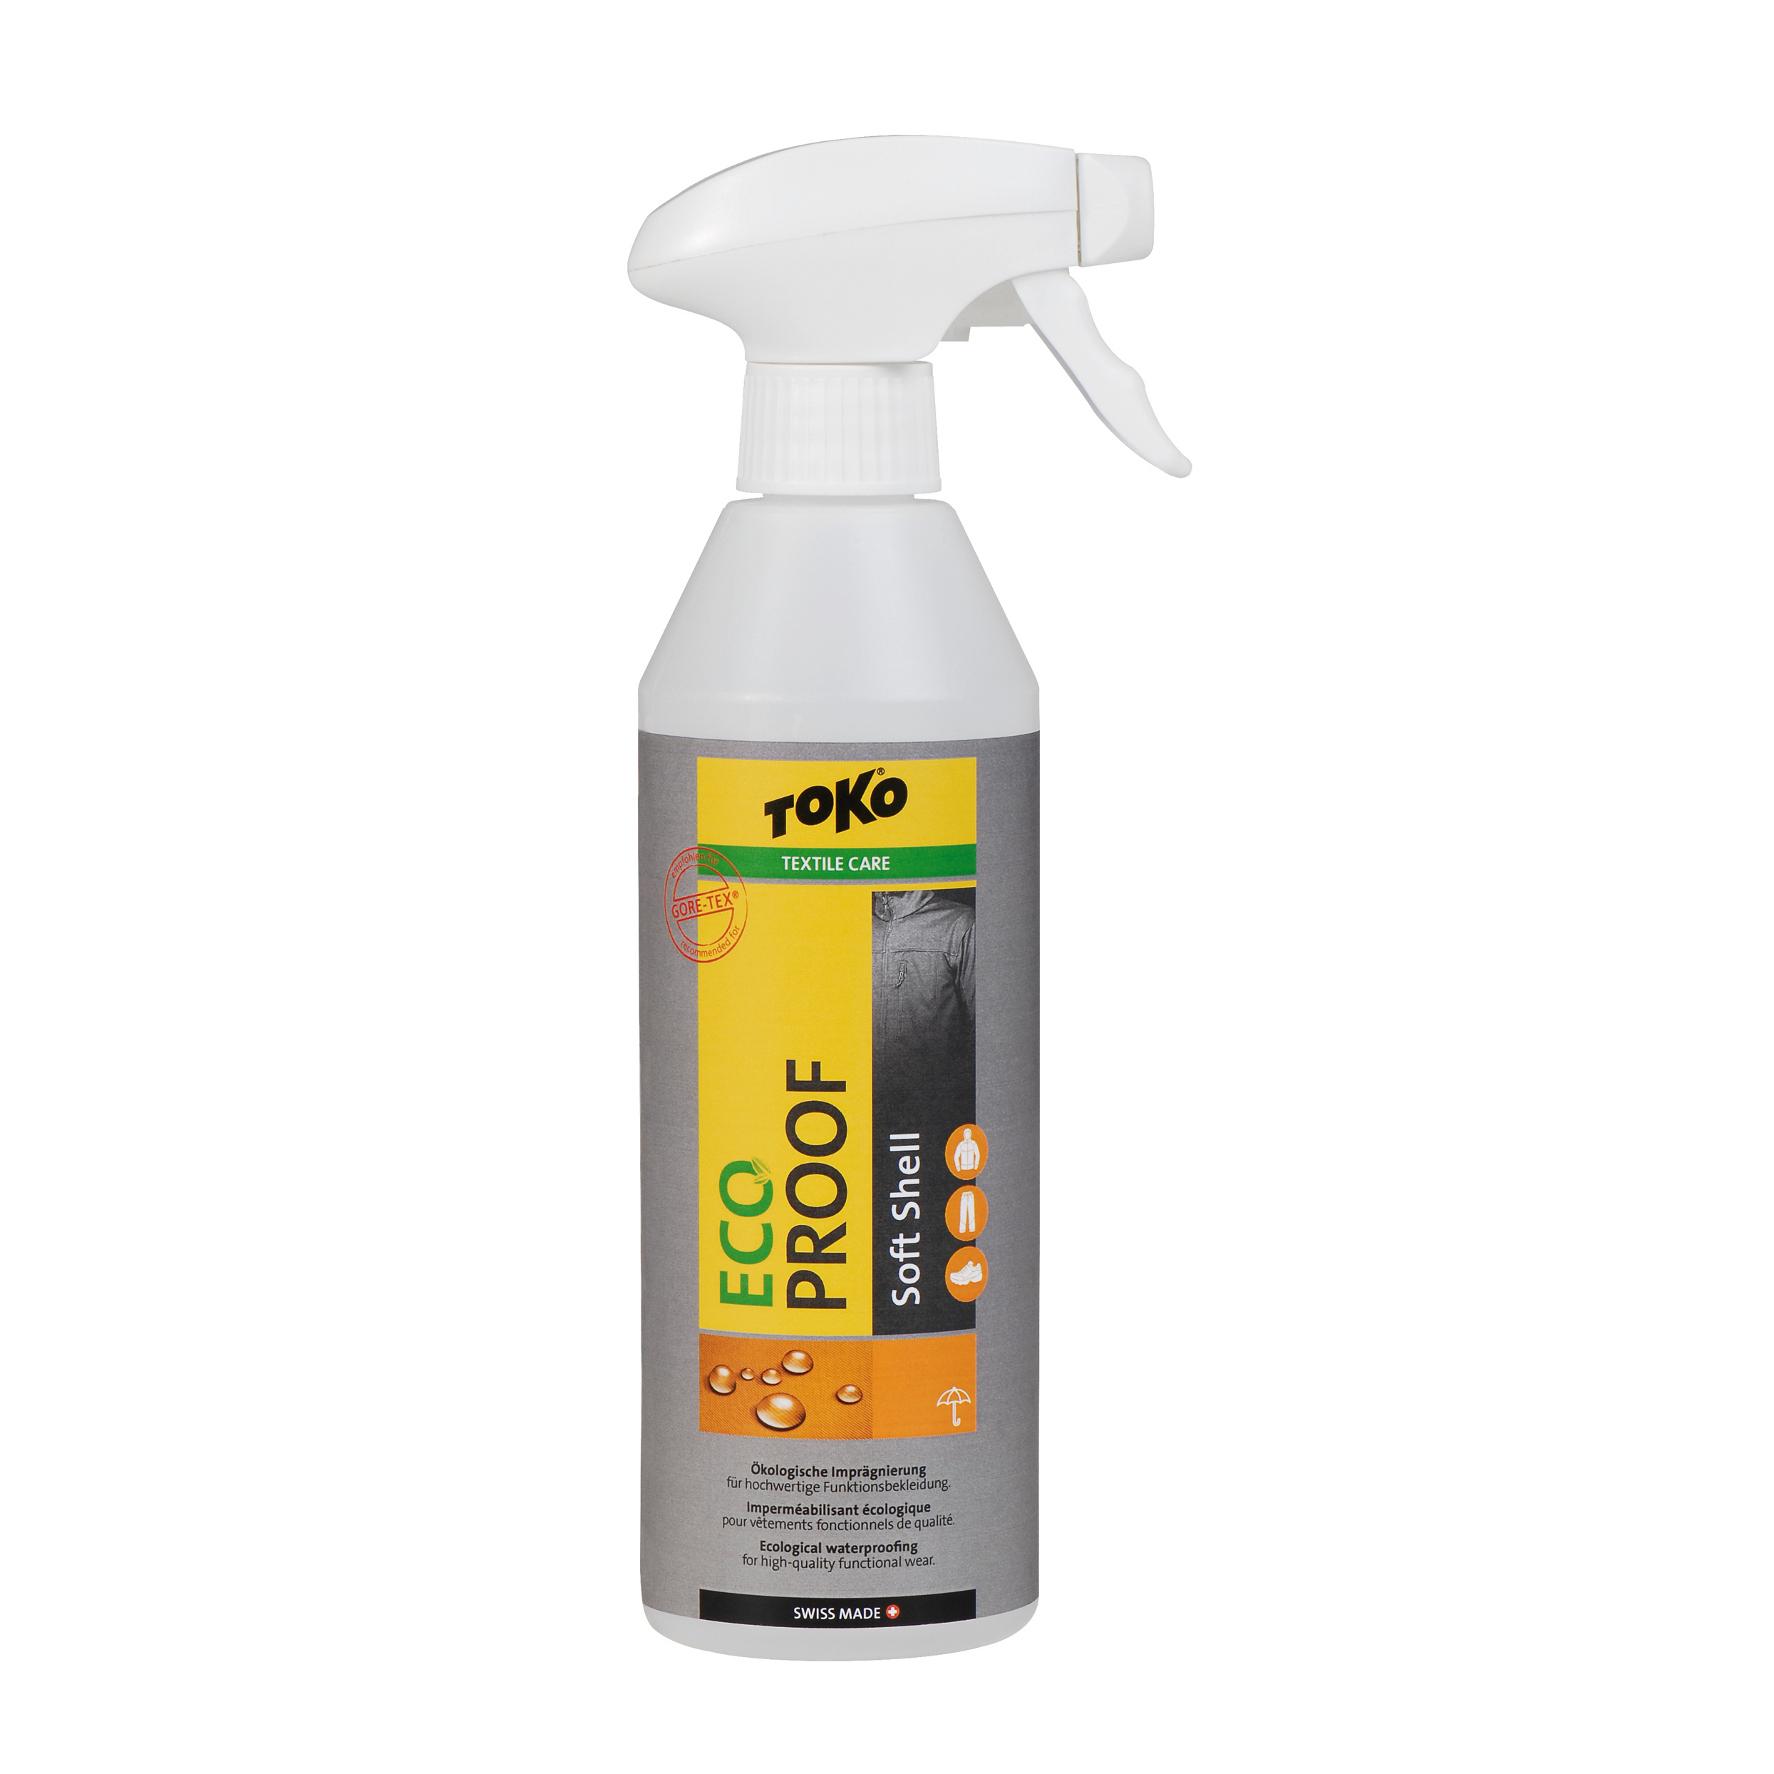 Foto Toko Eco Soft Shell Proof Productos de cuidado y limpieza 500 ml